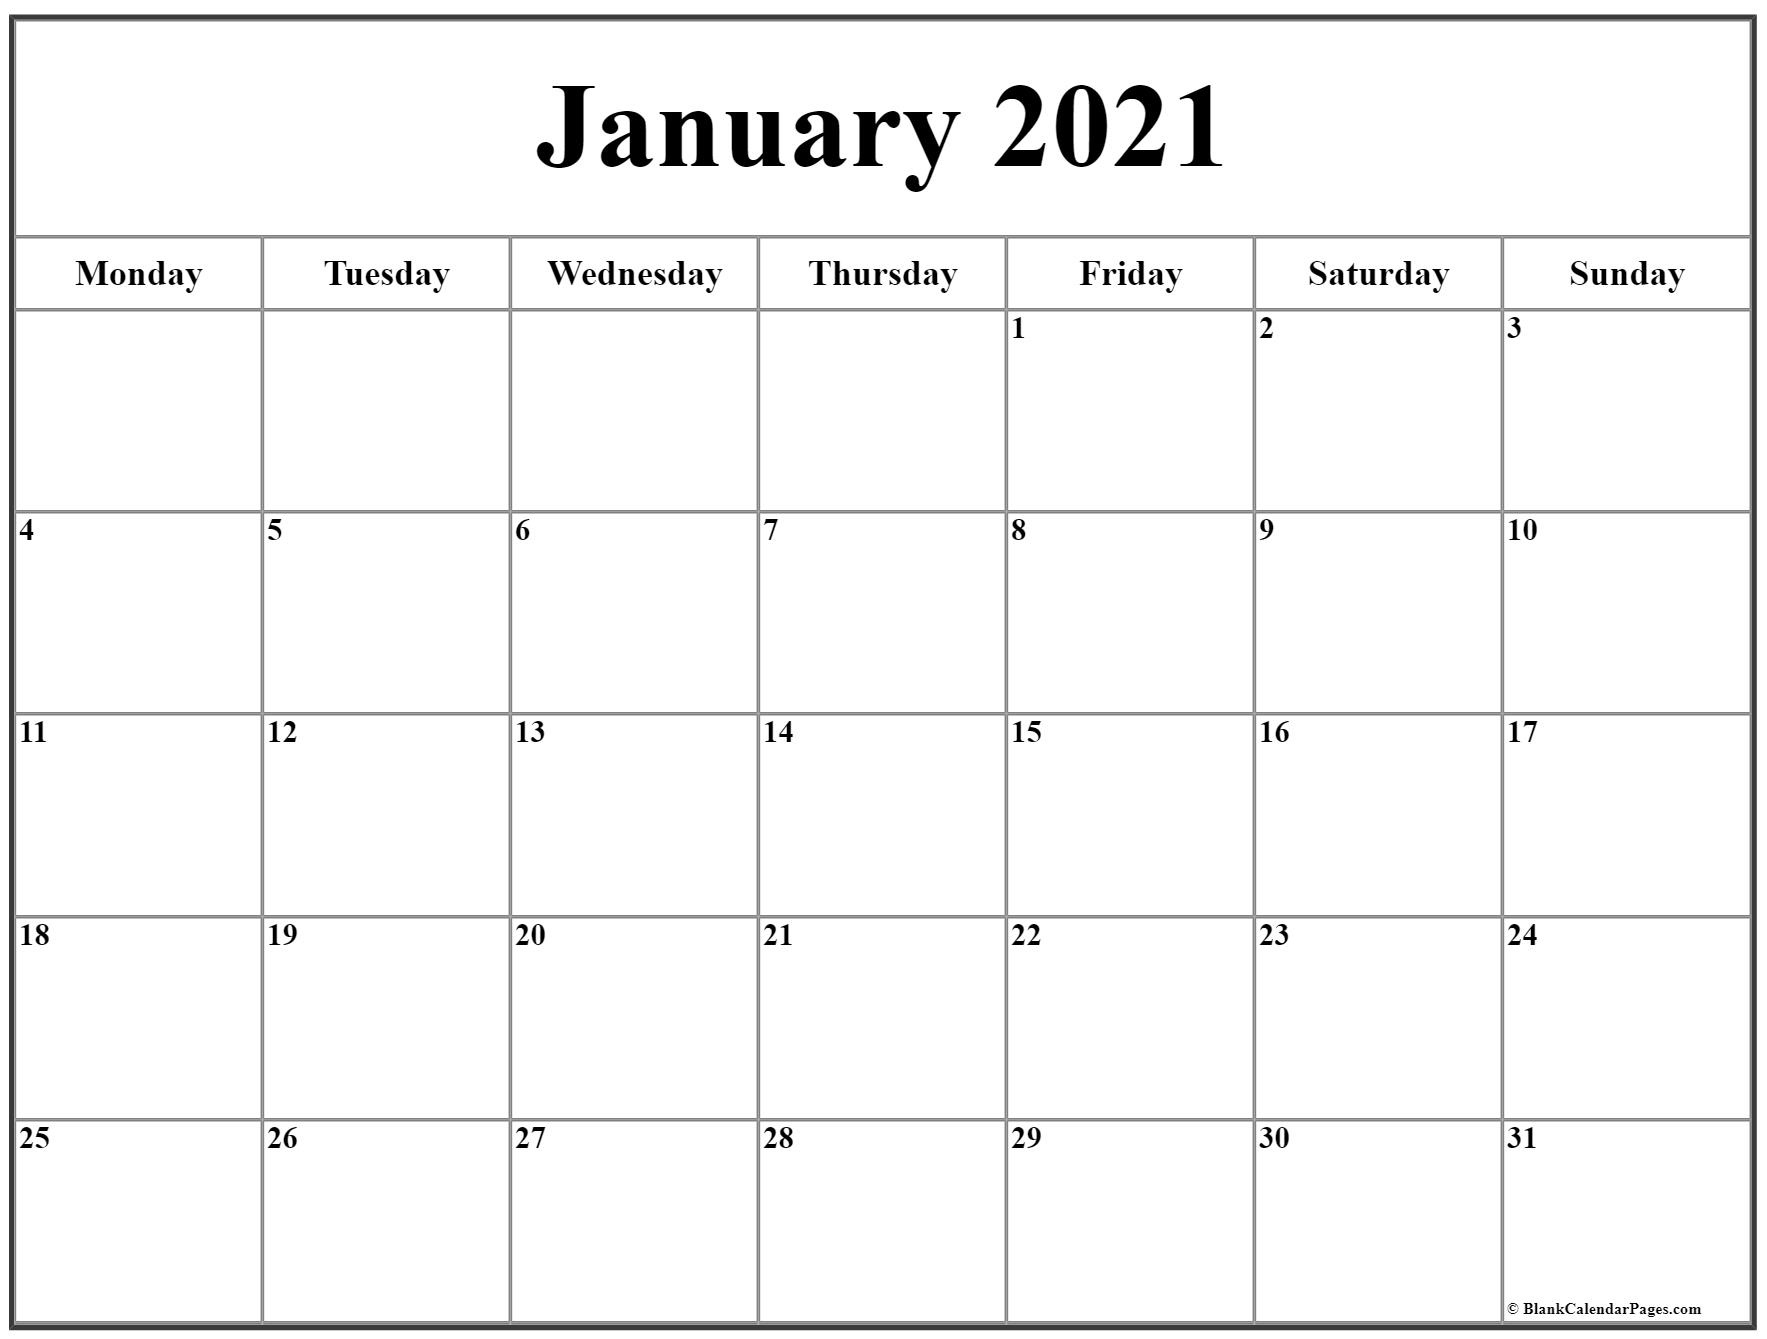 Catch 2021 Calendar Monday Sunday